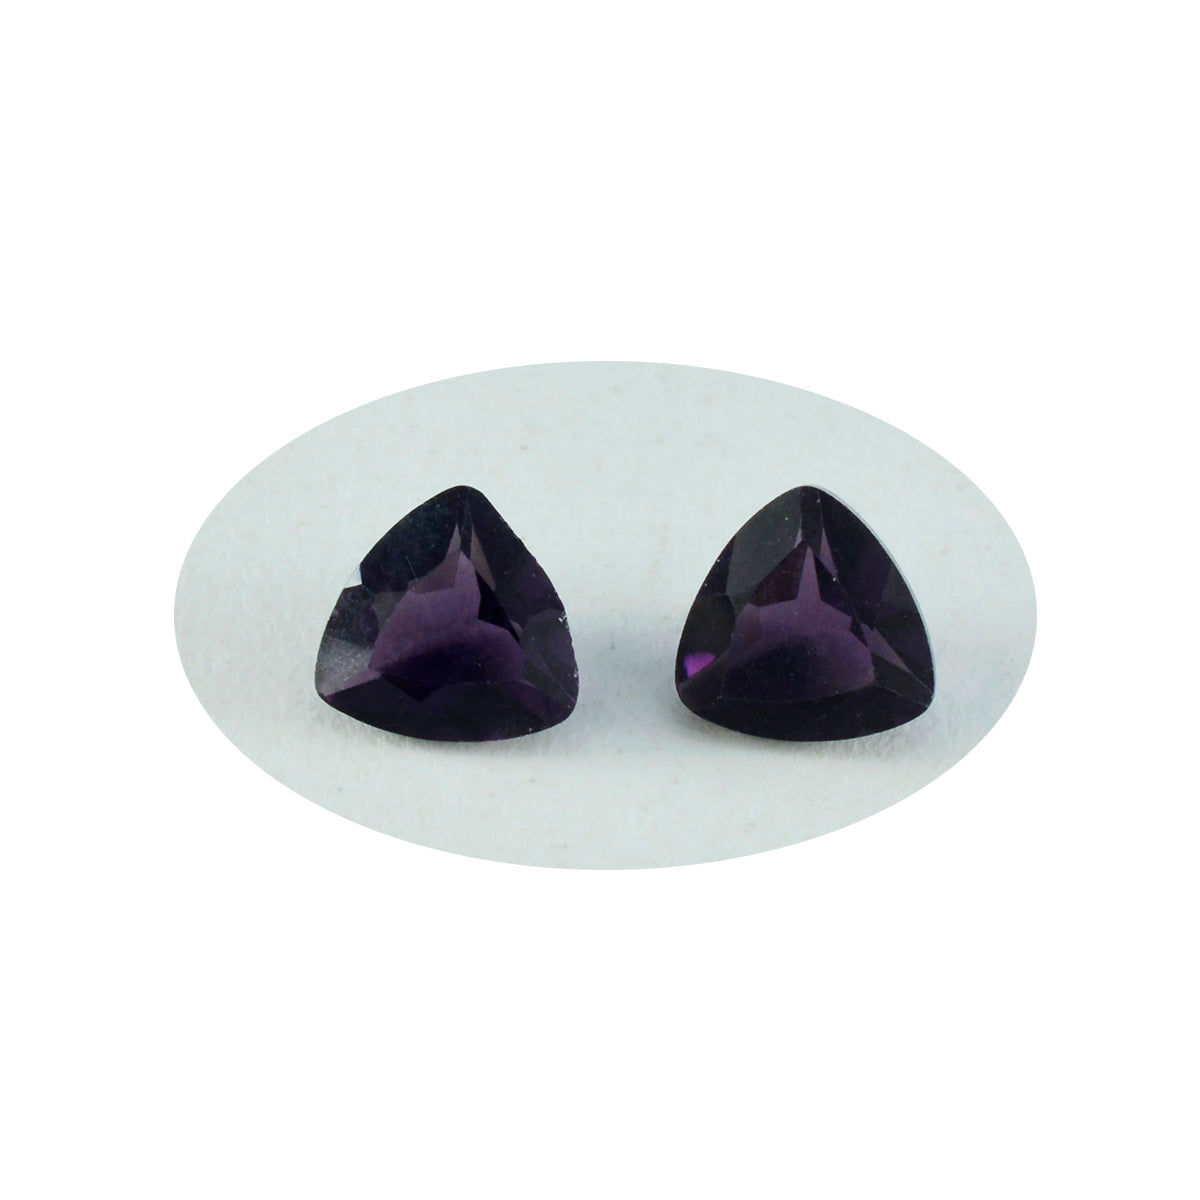 riyogems 1 шт. фиолетовый аметист cz граненый 13x13 мм форма триллион красивый качественный свободный драгоценный камень